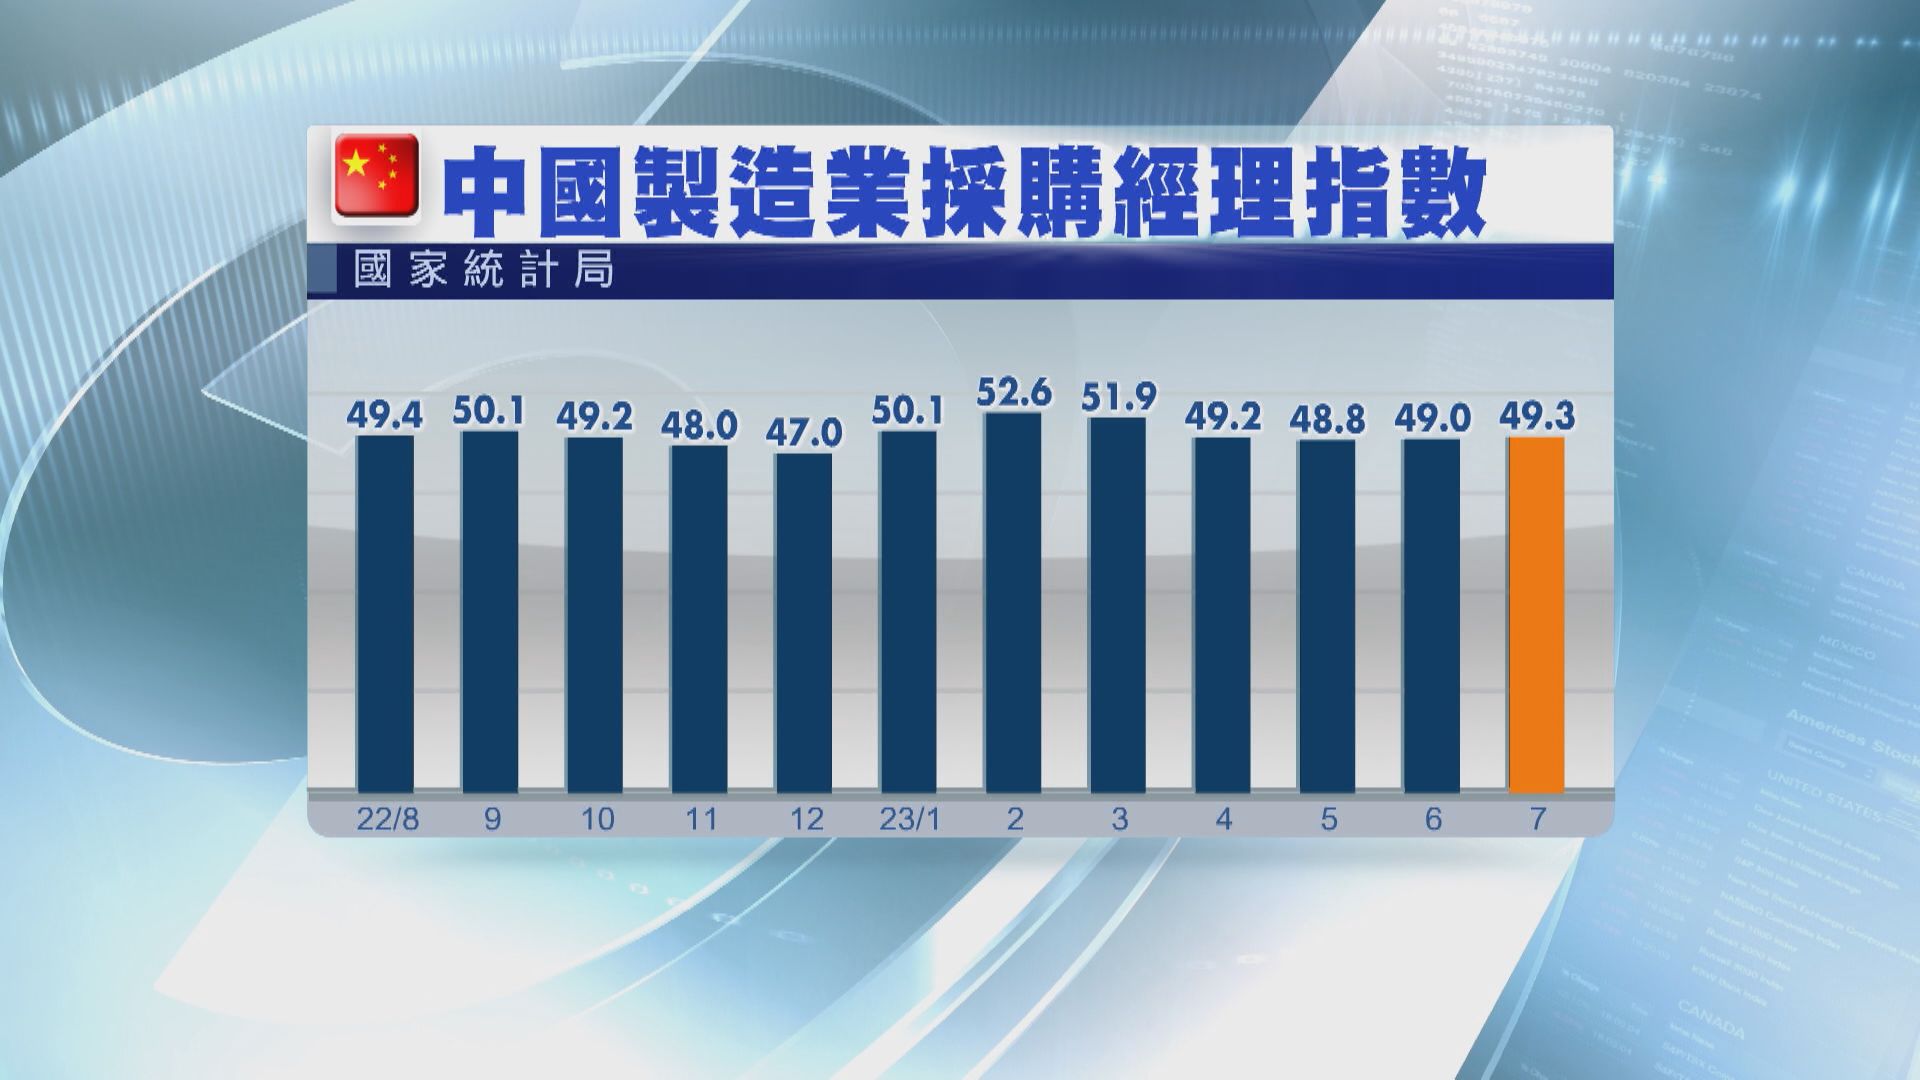 【向好態勢】內地7月製造業PMI升至49.3 服務業4連跌